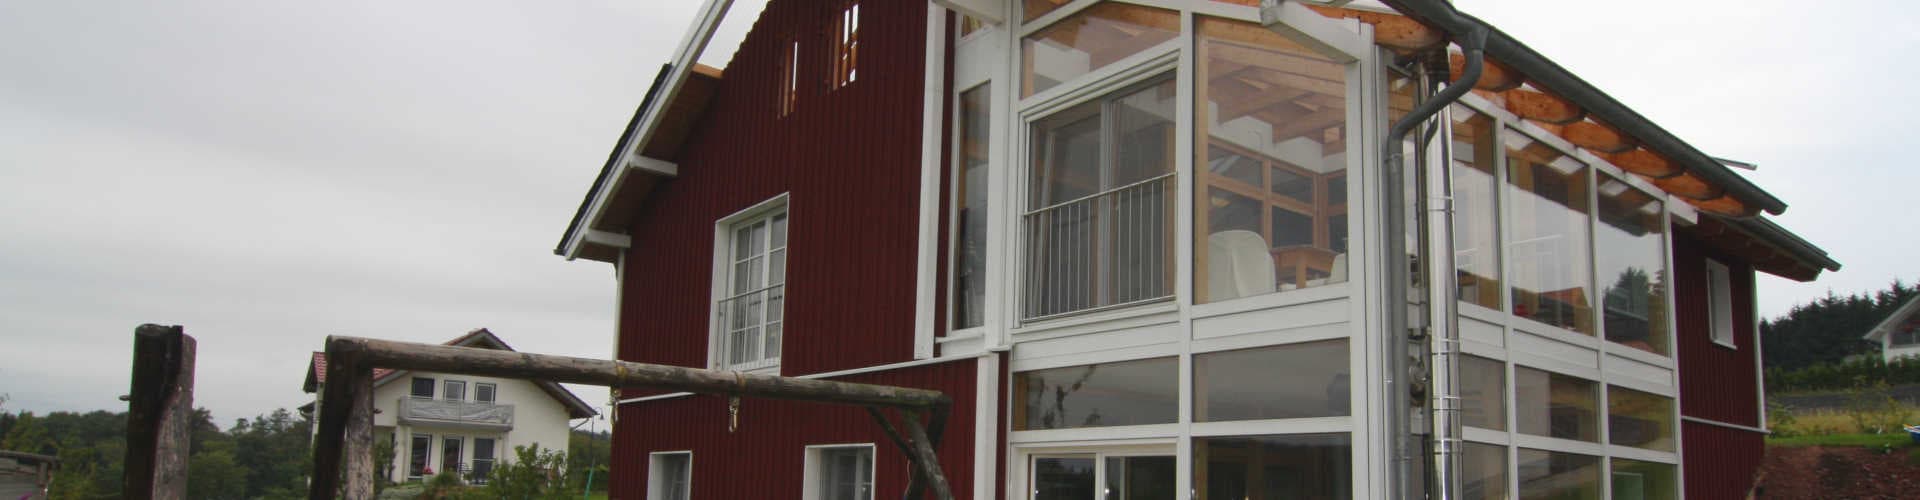 Holzhaus im Schwedenstil